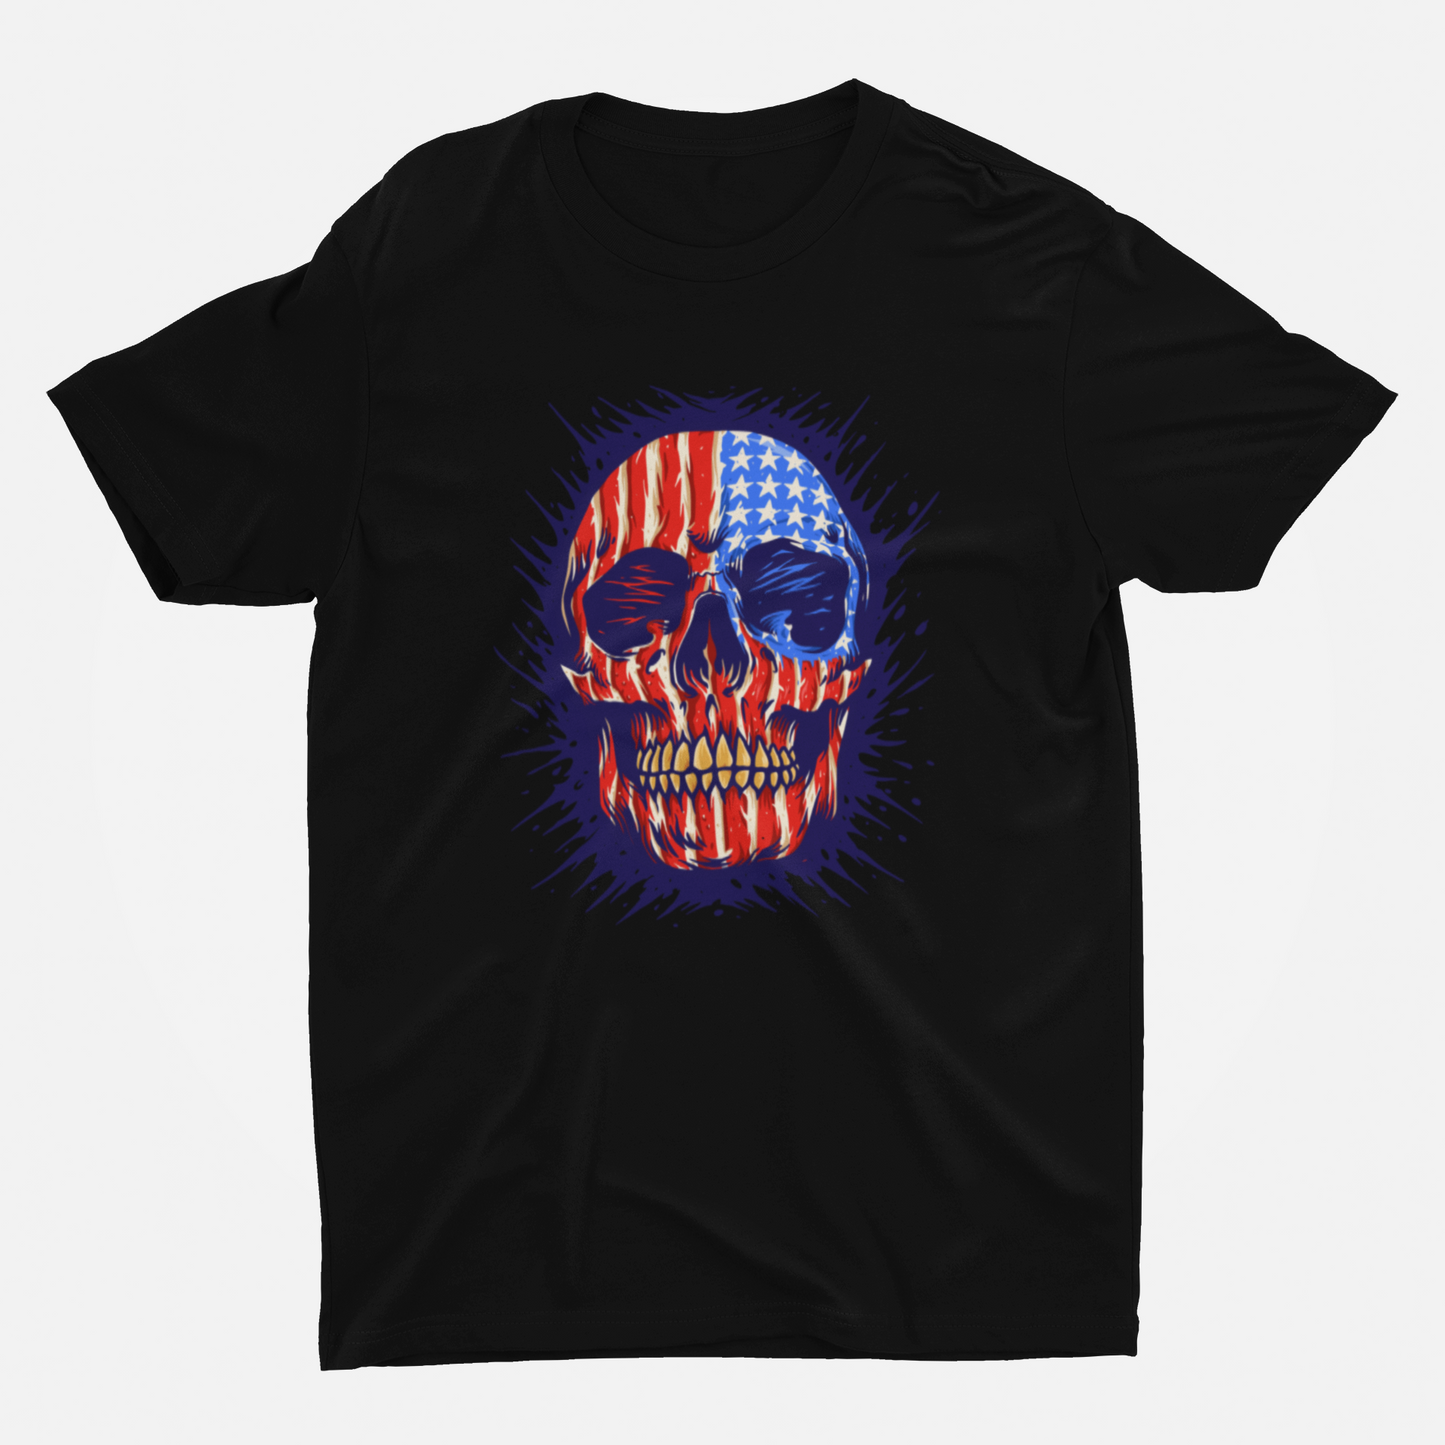 American Skeleton Black Round Neck T-Shirt for Men.